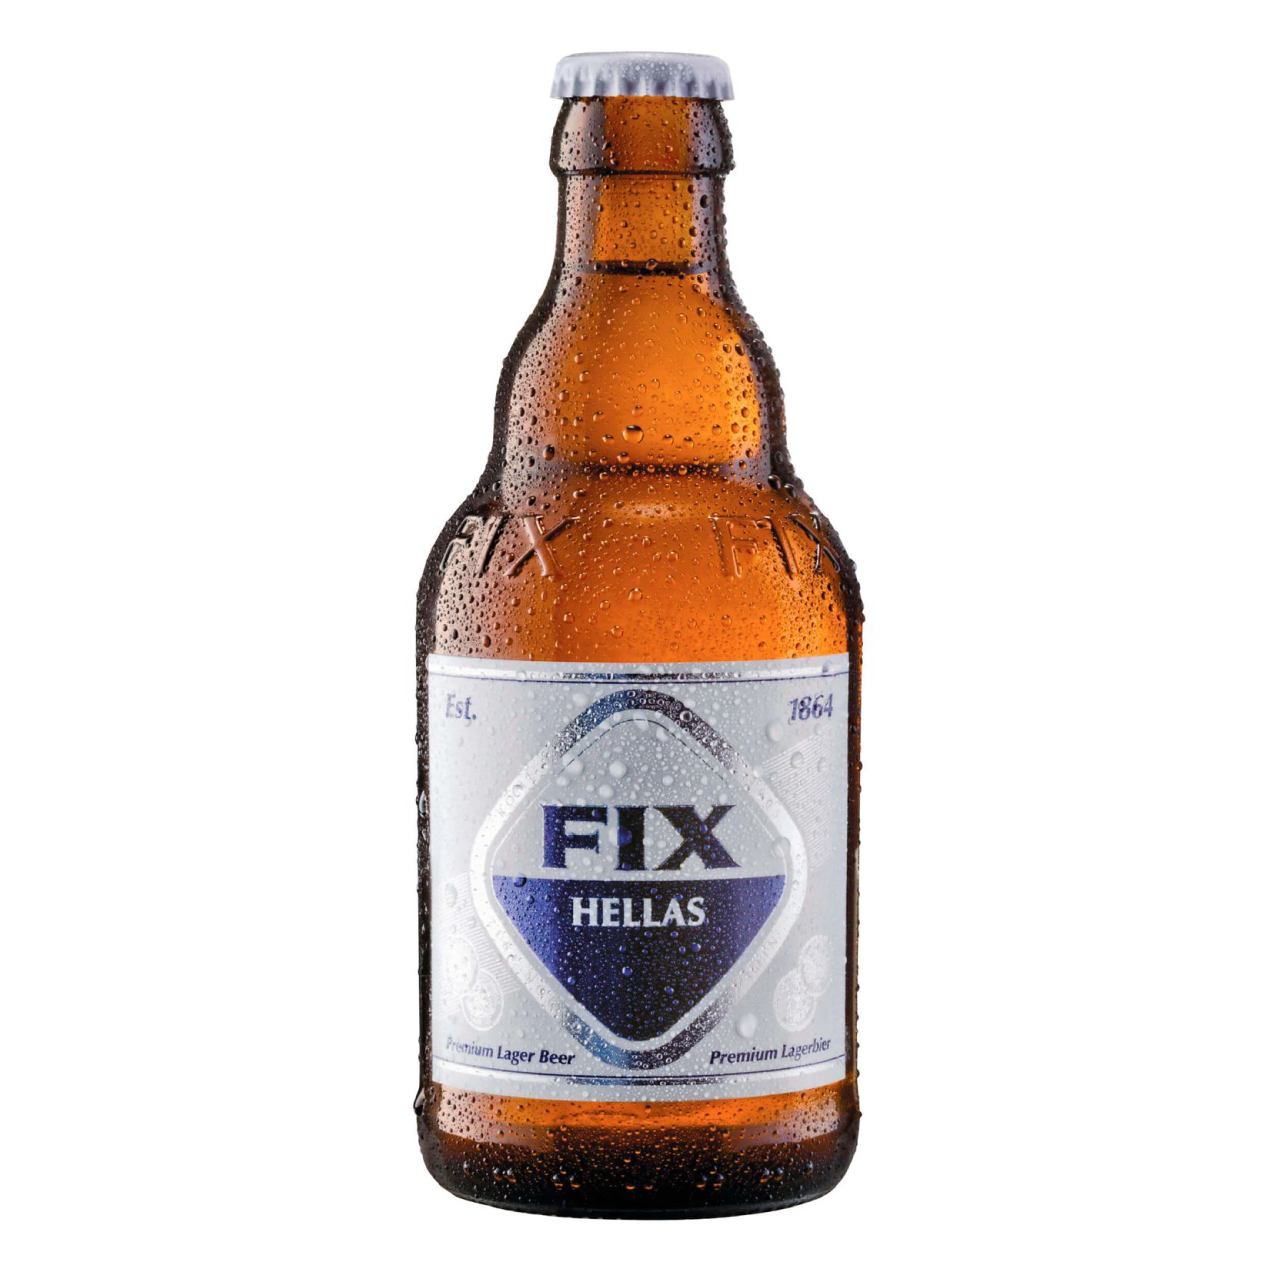 Fix Hellas beer